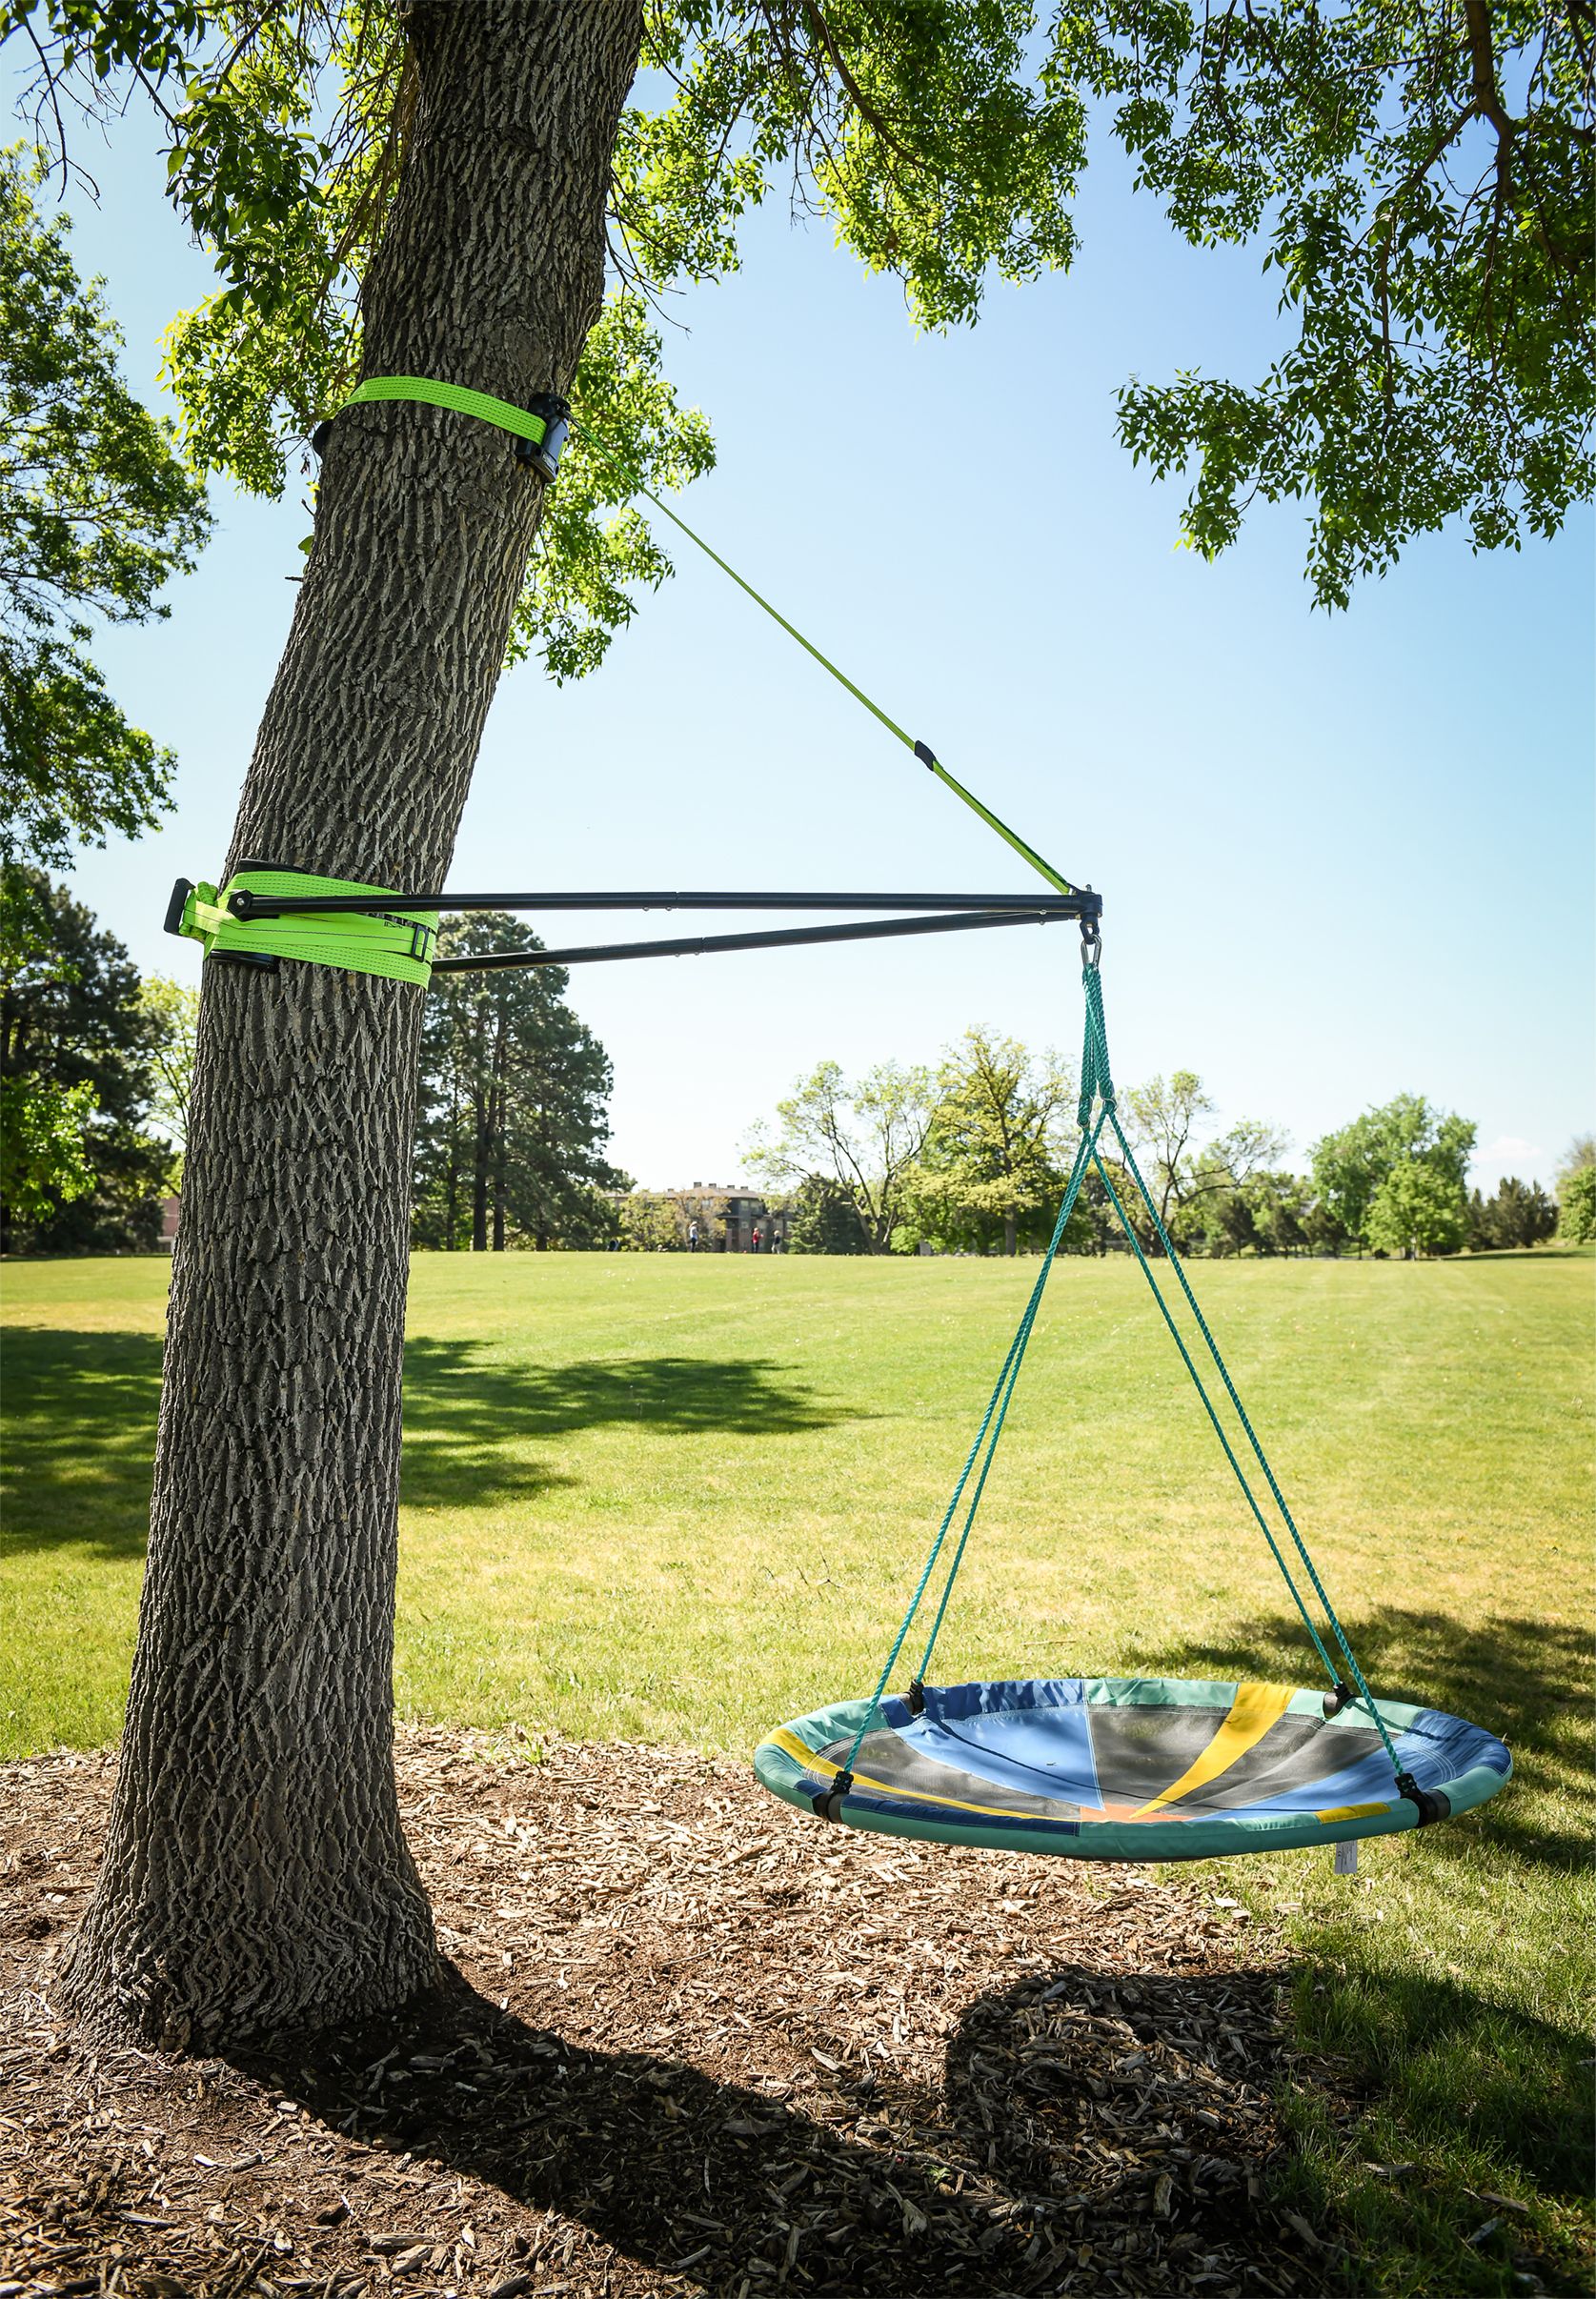 Slackers Swing Residential Swings Not Included-Swings Metal Swing Set at